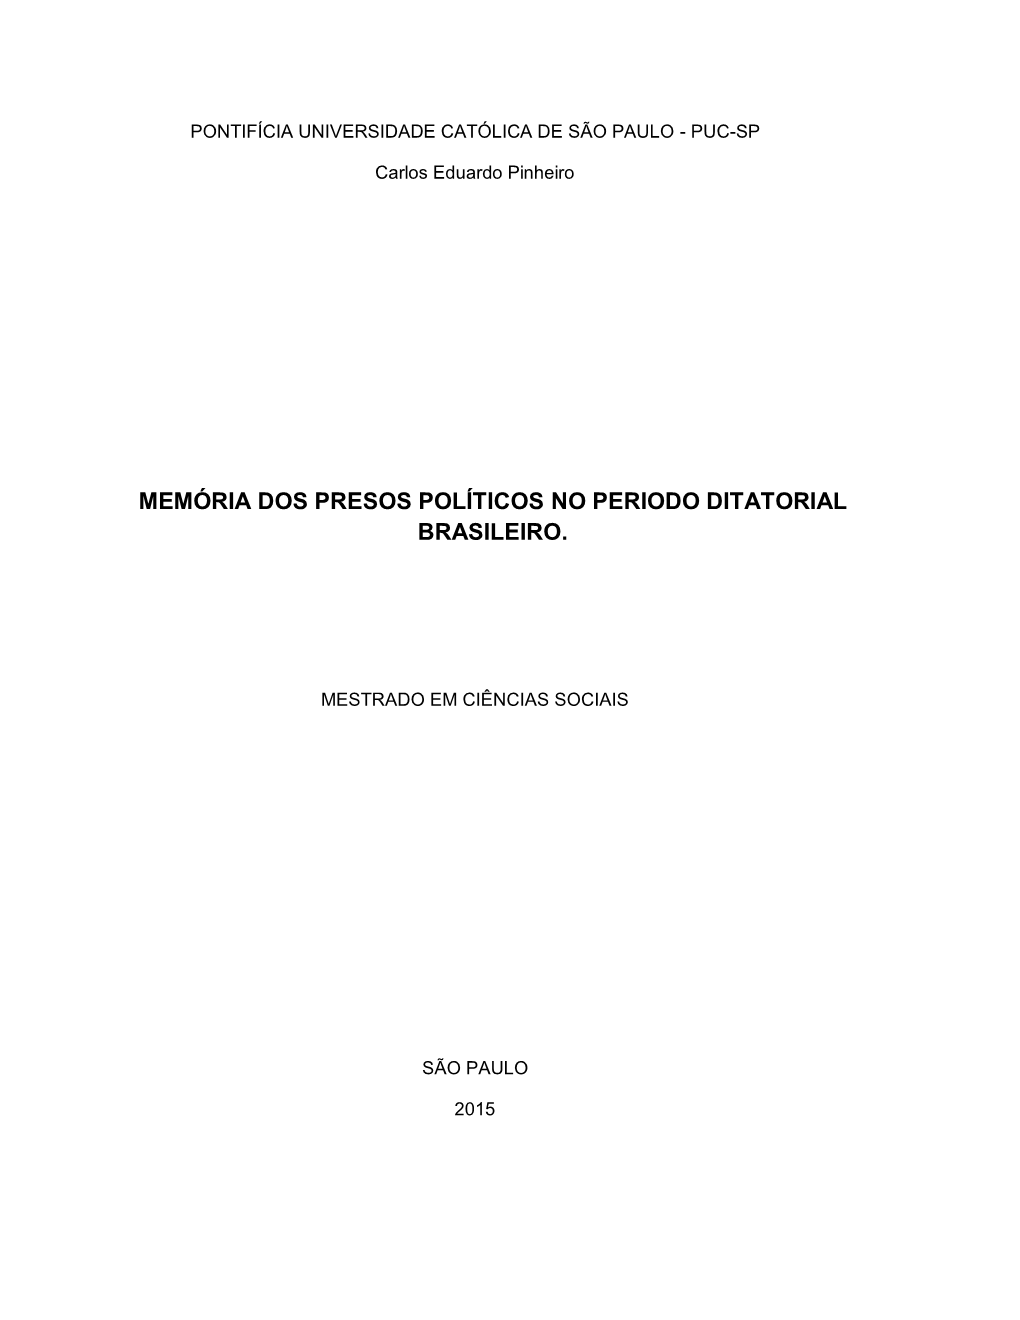 Memória Dos Presos Políticos No Periodo Ditatorial Brasileiro